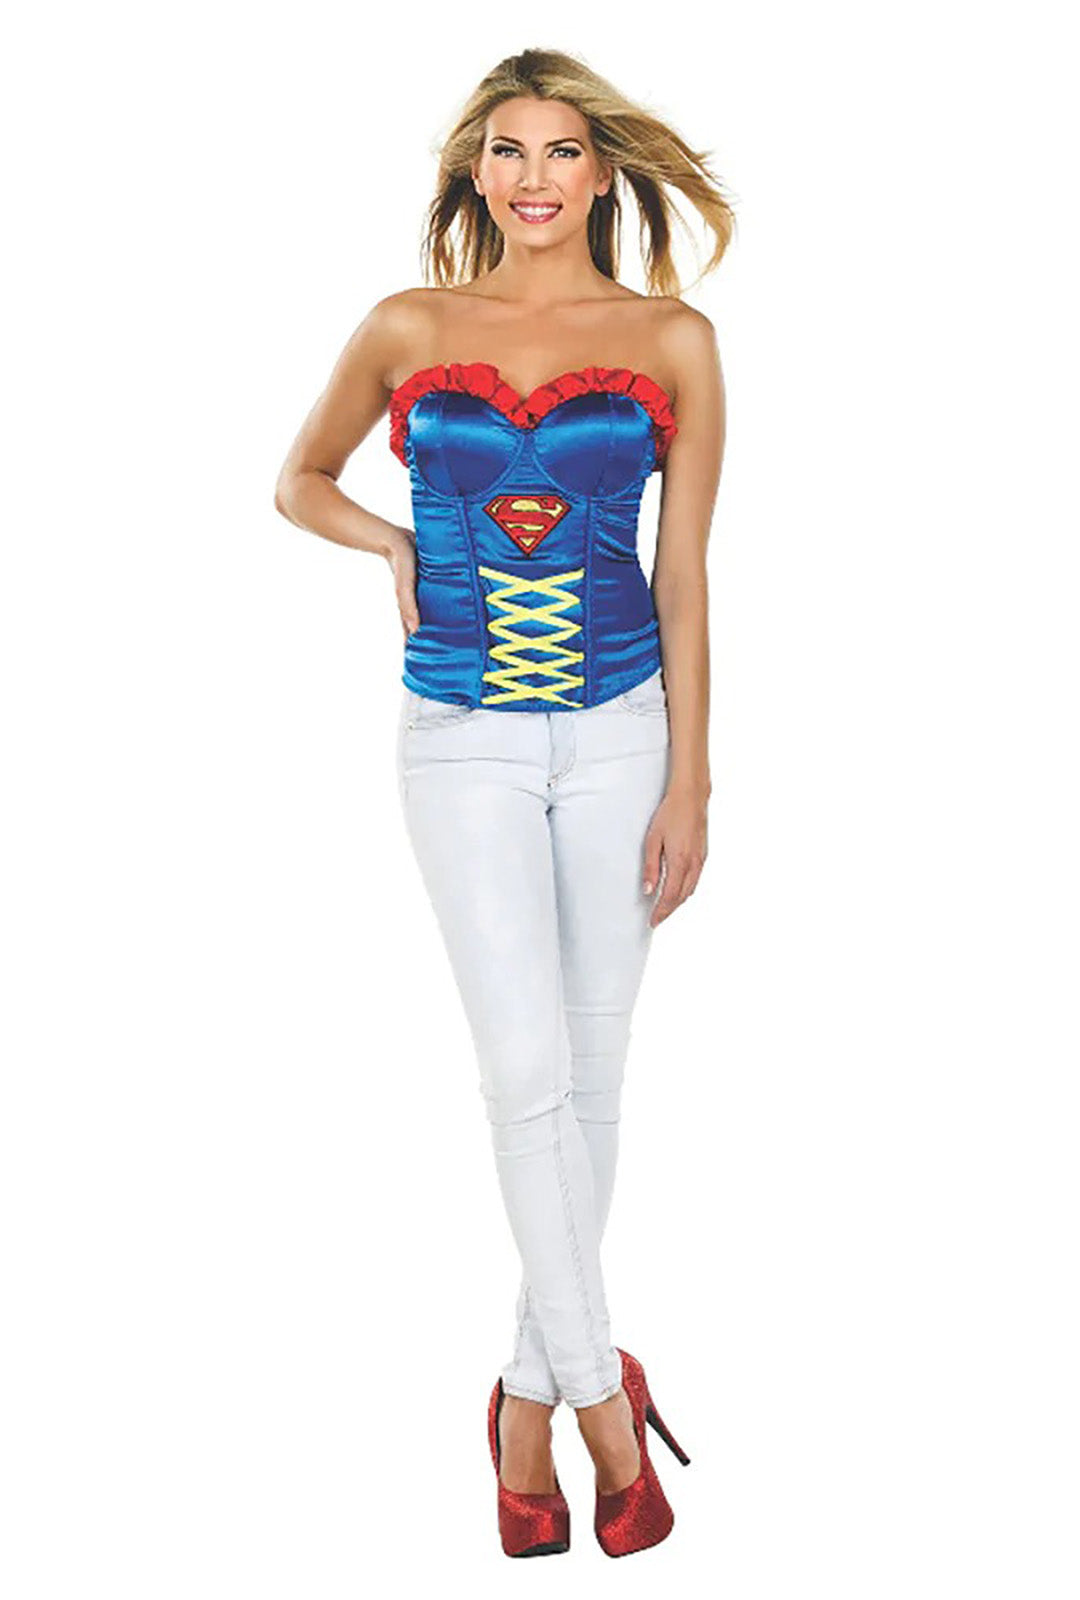 Supergirl Corset Hurly Burly 2305